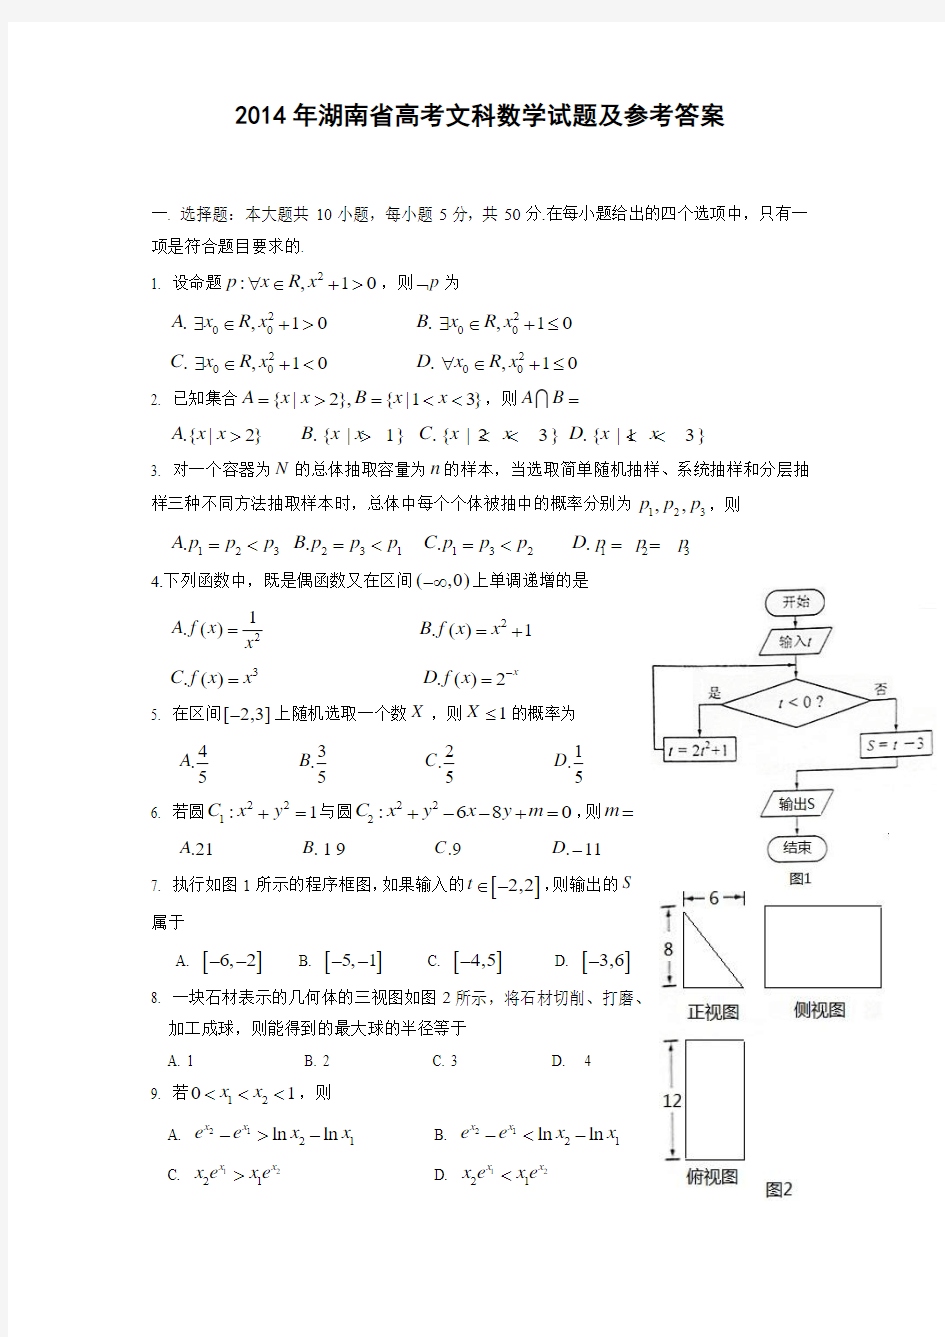 2014年高考文科数学试题(湖南卷)及参考答案